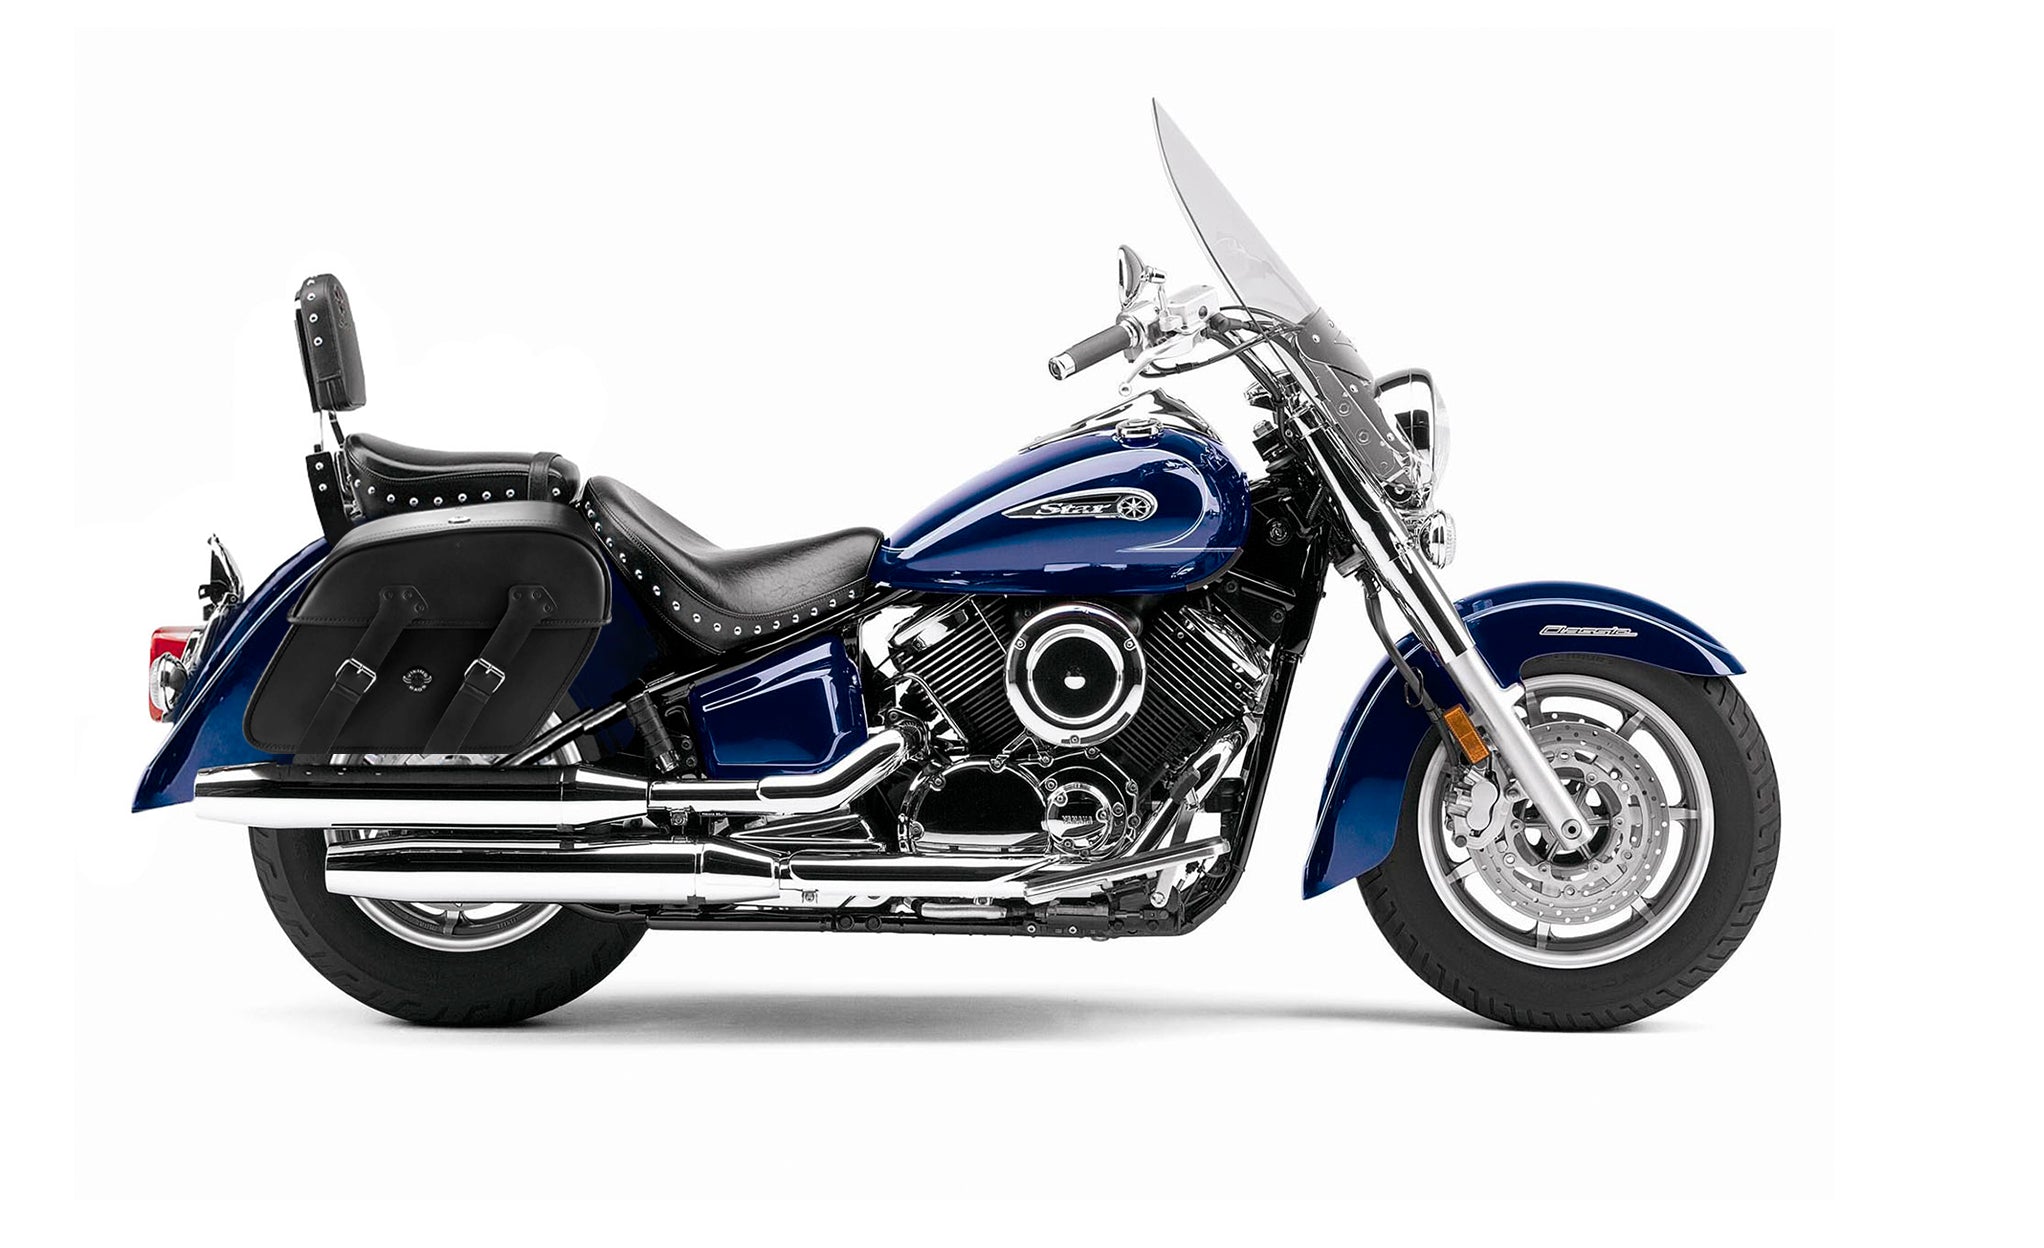 Viking Raven Large Yamaha Silverado Motorcycle Leather Saddlebags on Bike Photo @expand